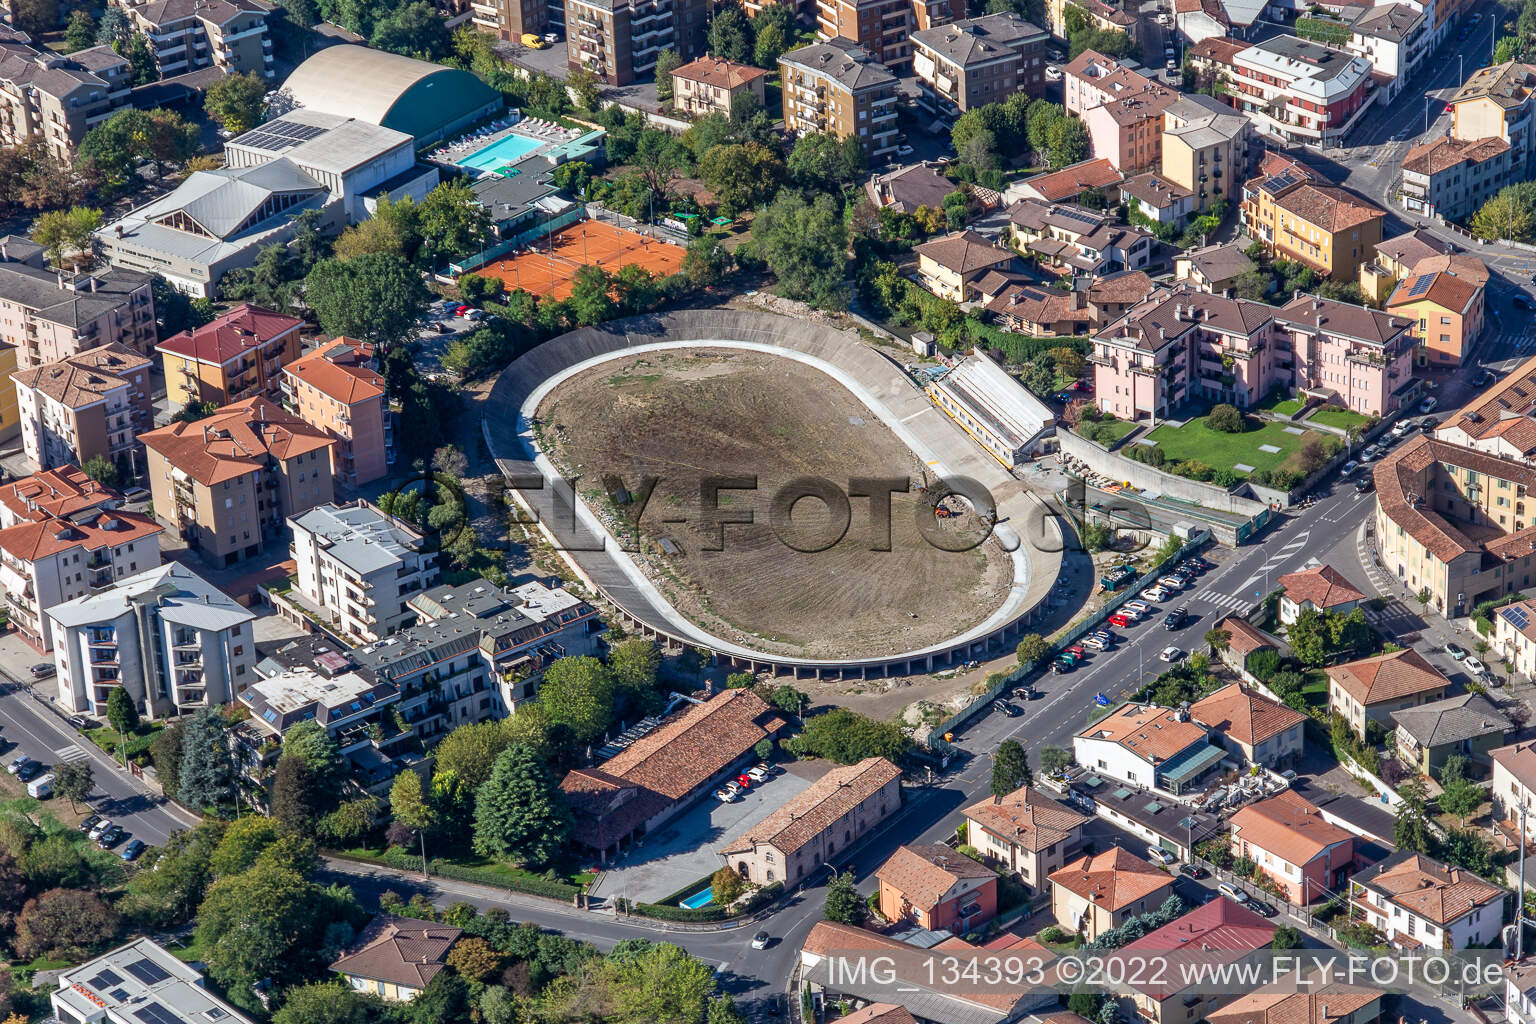 Campo Sportivo "Velodromo" in Crema im Bundesland Cremona, Italien